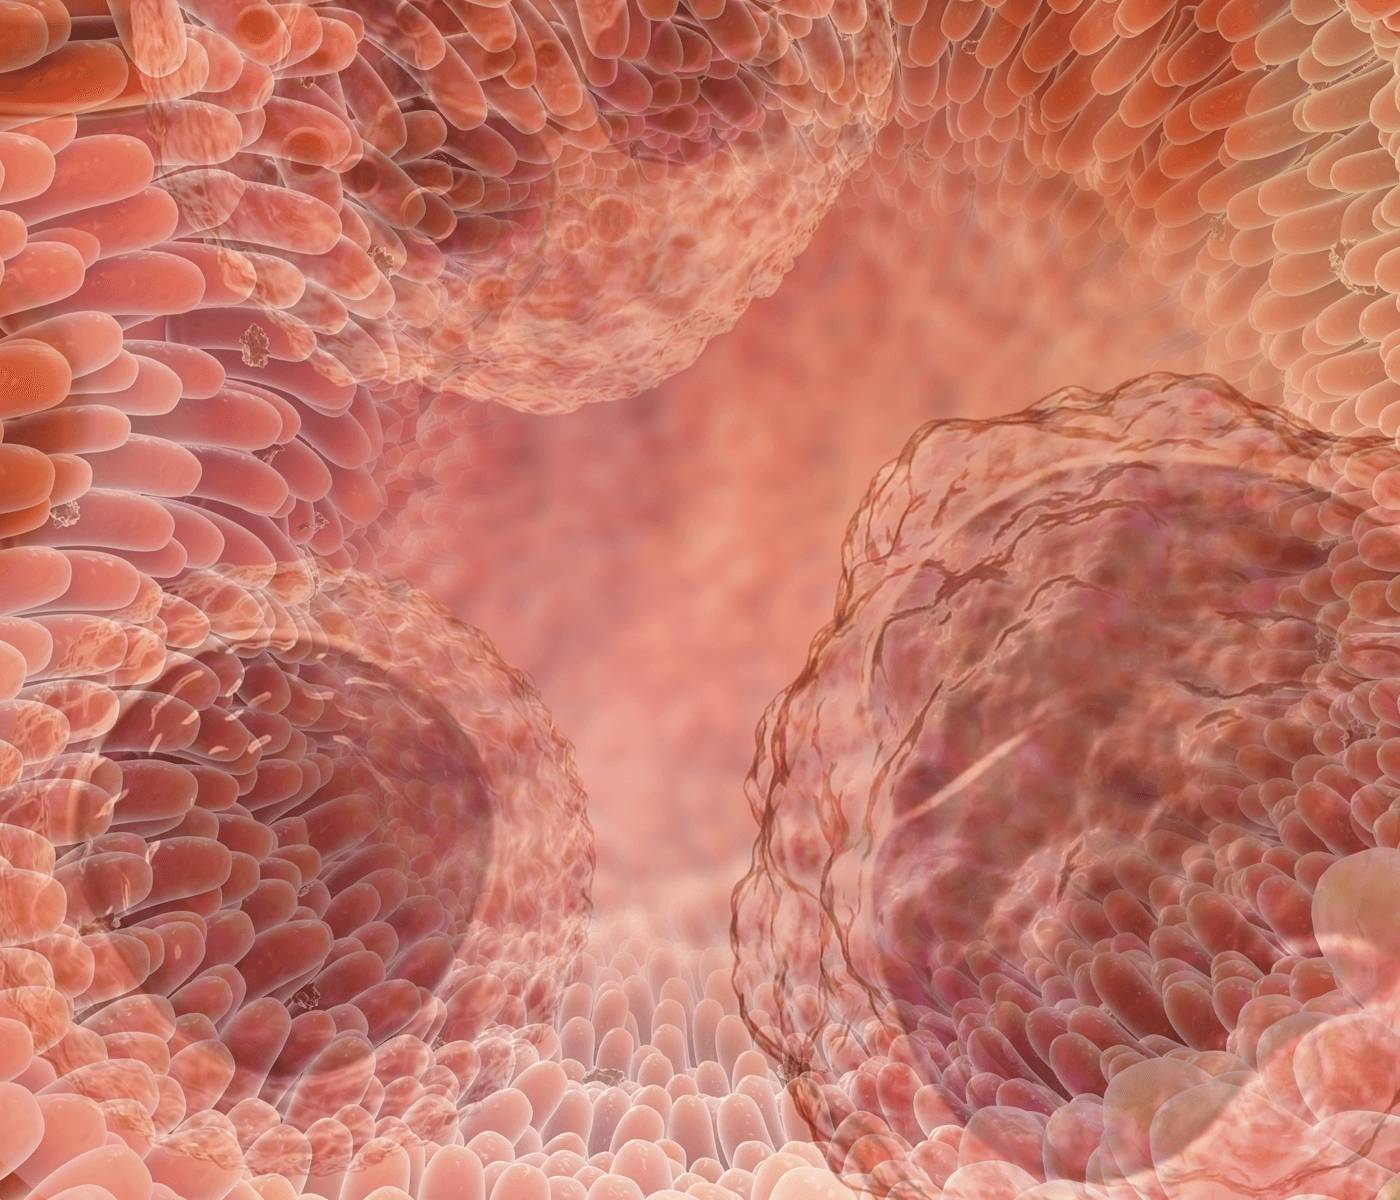 Intestino, o maior órgão imune do organismo – Parte 1